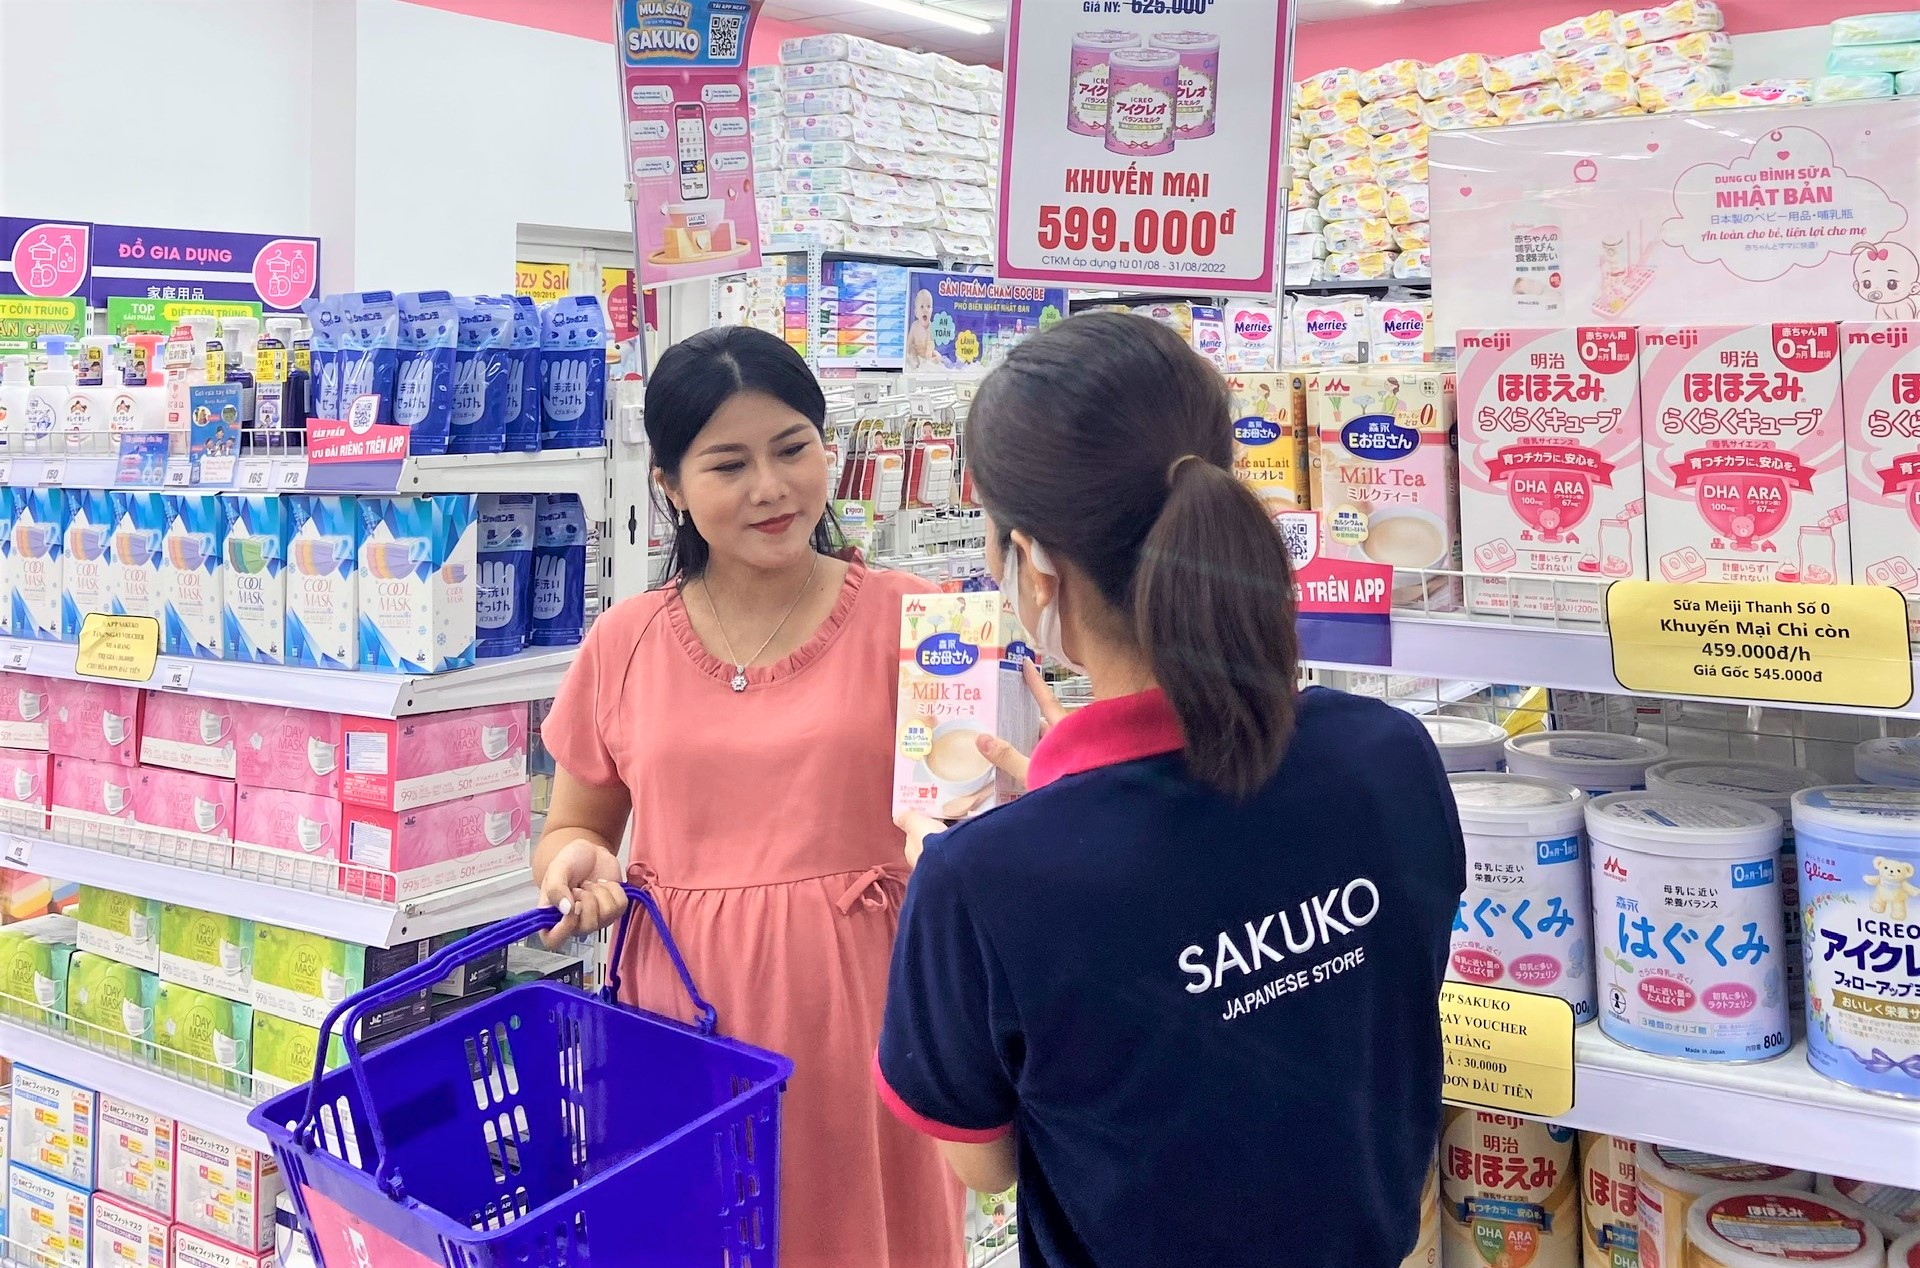 Hành trình hơn một thập kỷ đổi mới sáng tạo của Sakuko đồng hành cùng người tiêu dùng Việt